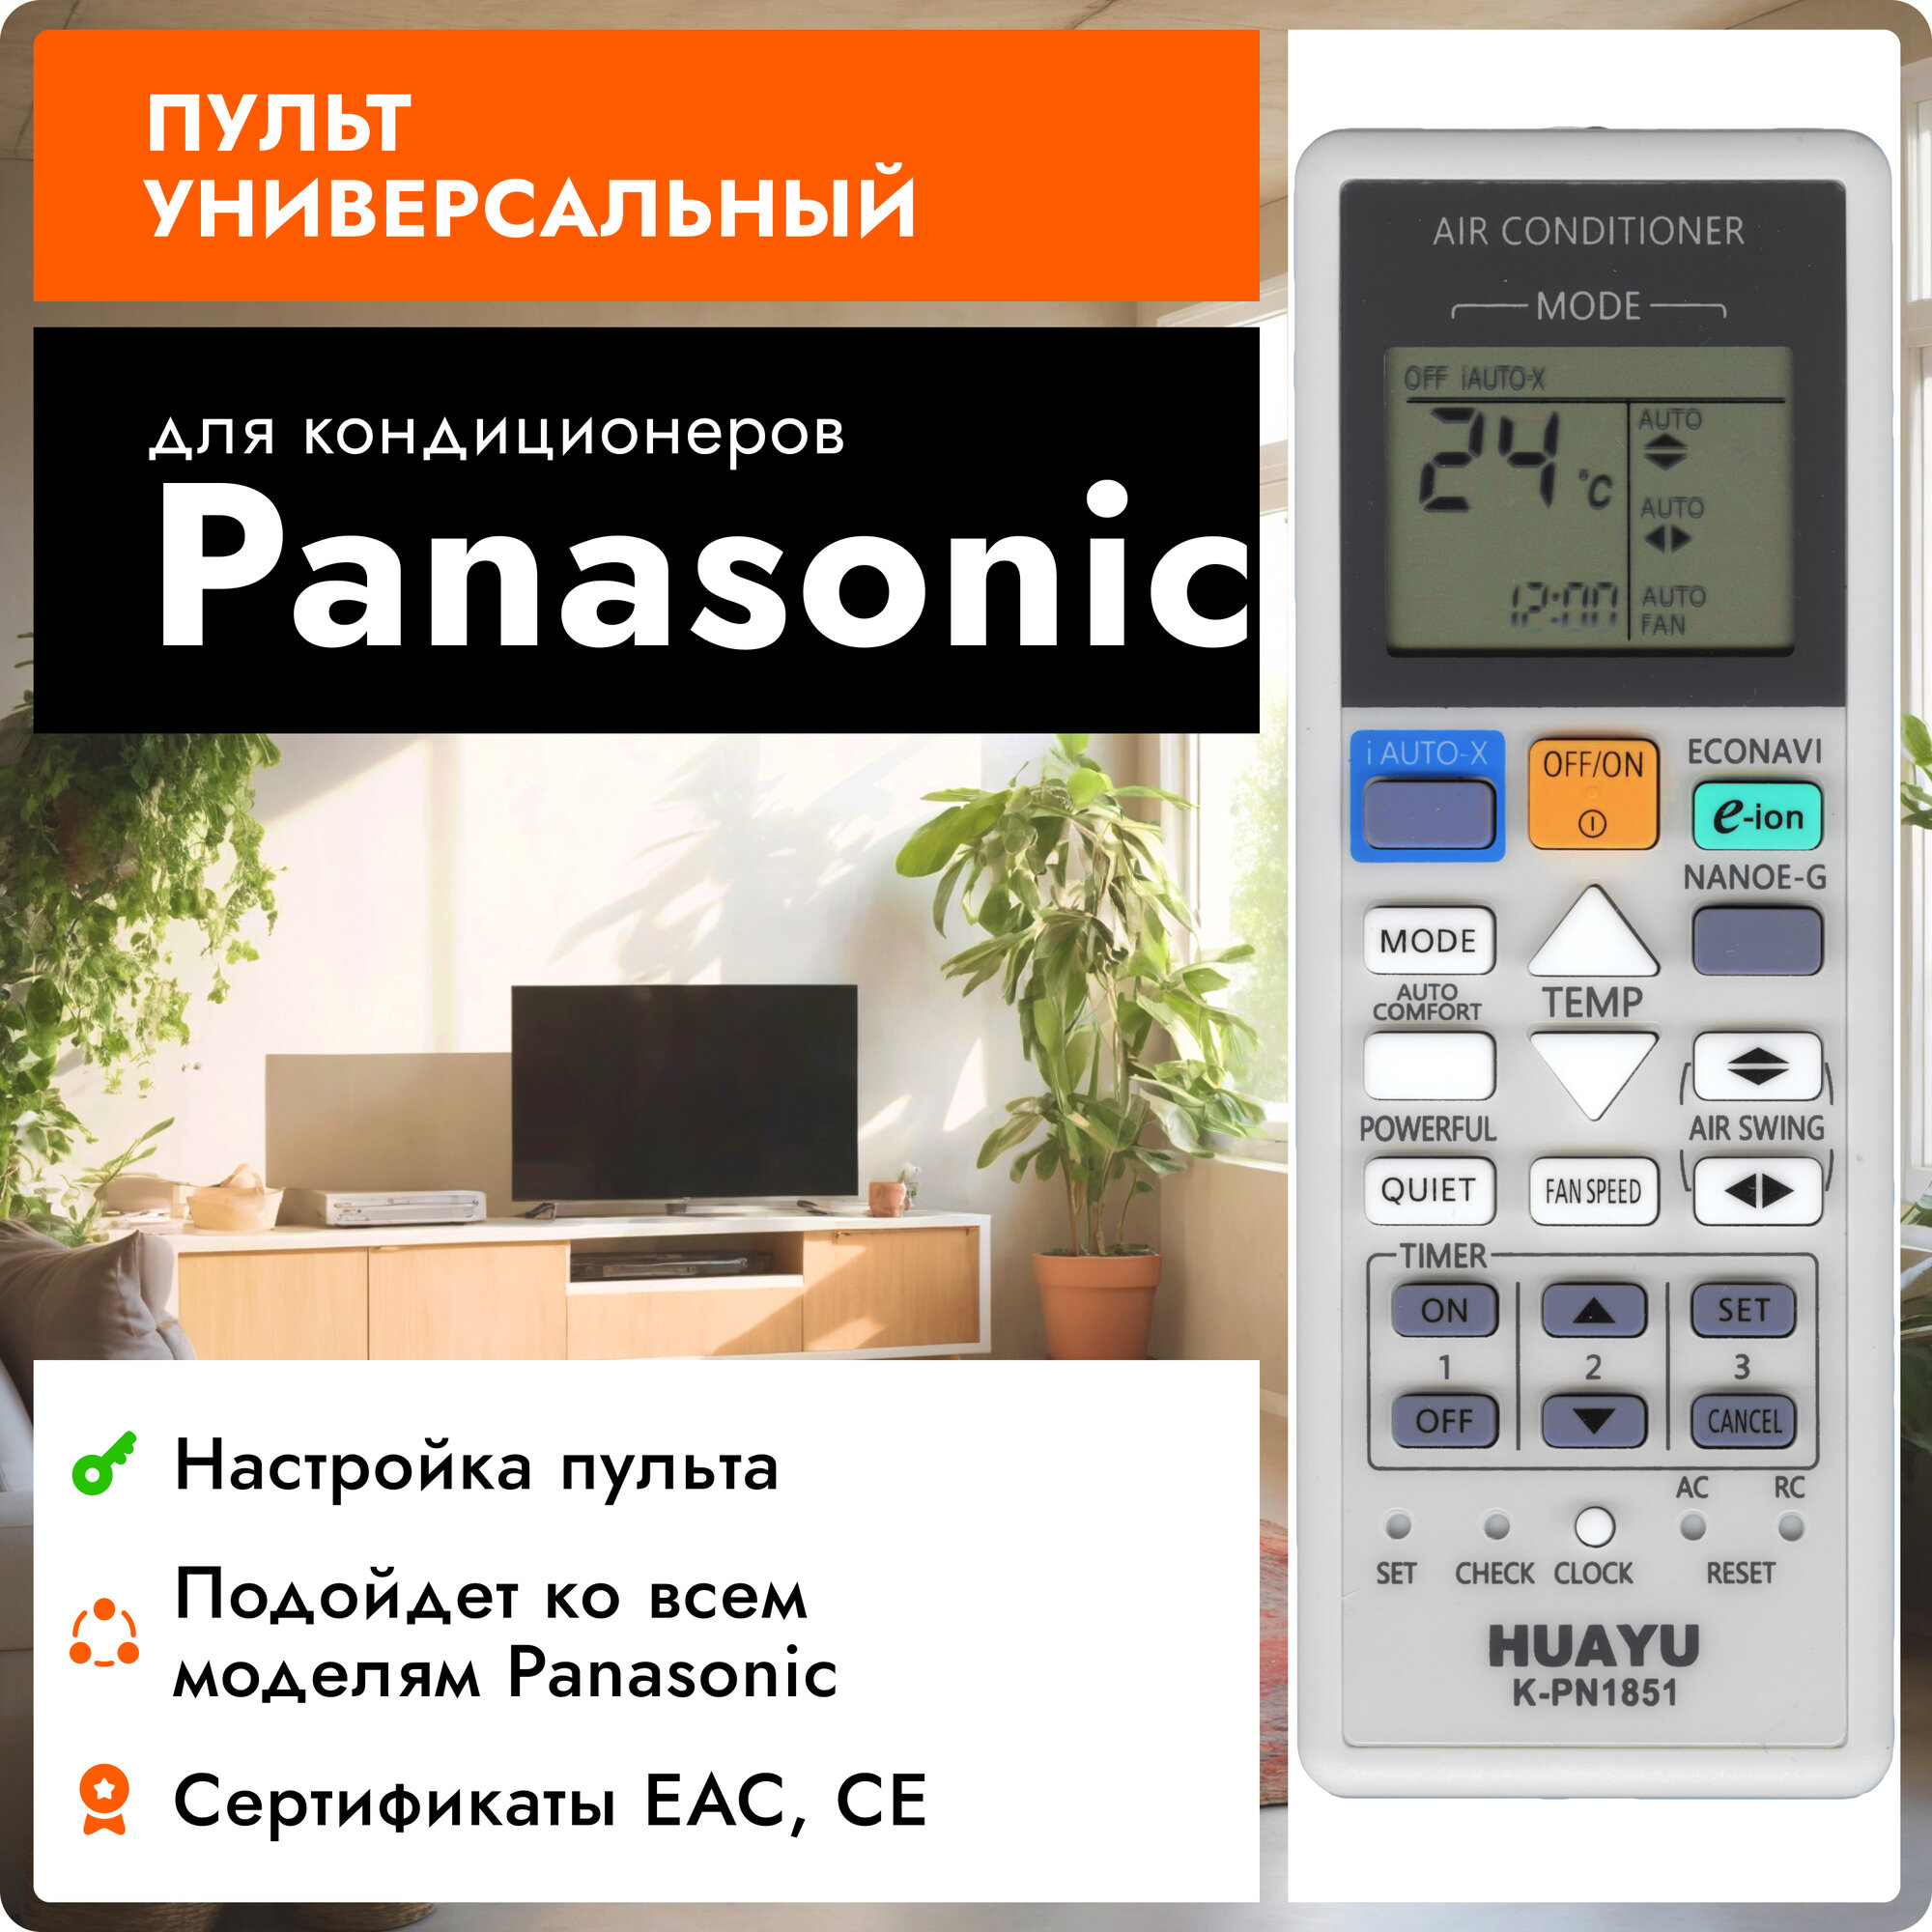 Универсальный пульт Huayu K-PN1851 для кондиционеров Panasonic / Панасоник !